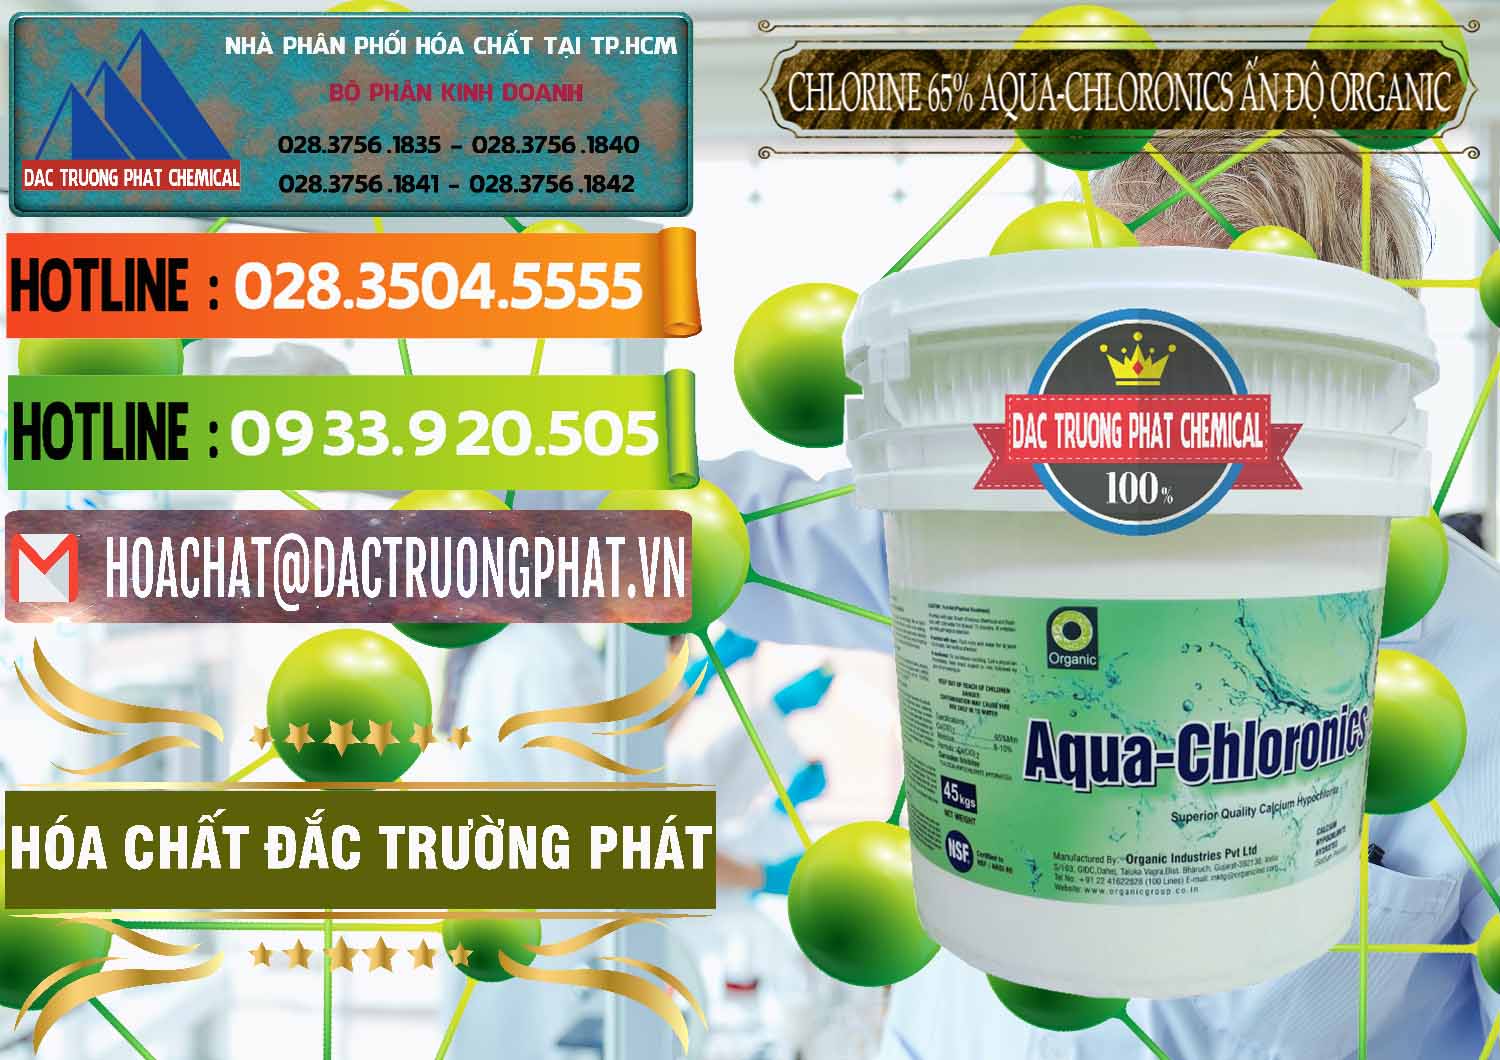 Nơi bán - phân phối Chlorine – Clorin 65% Aqua-Chloronics Ấn Độ Organic India - 0210 - Công ty phân phối - cung cấp hóa chất tại TP.HCM - cungcaphoachat.com.vn